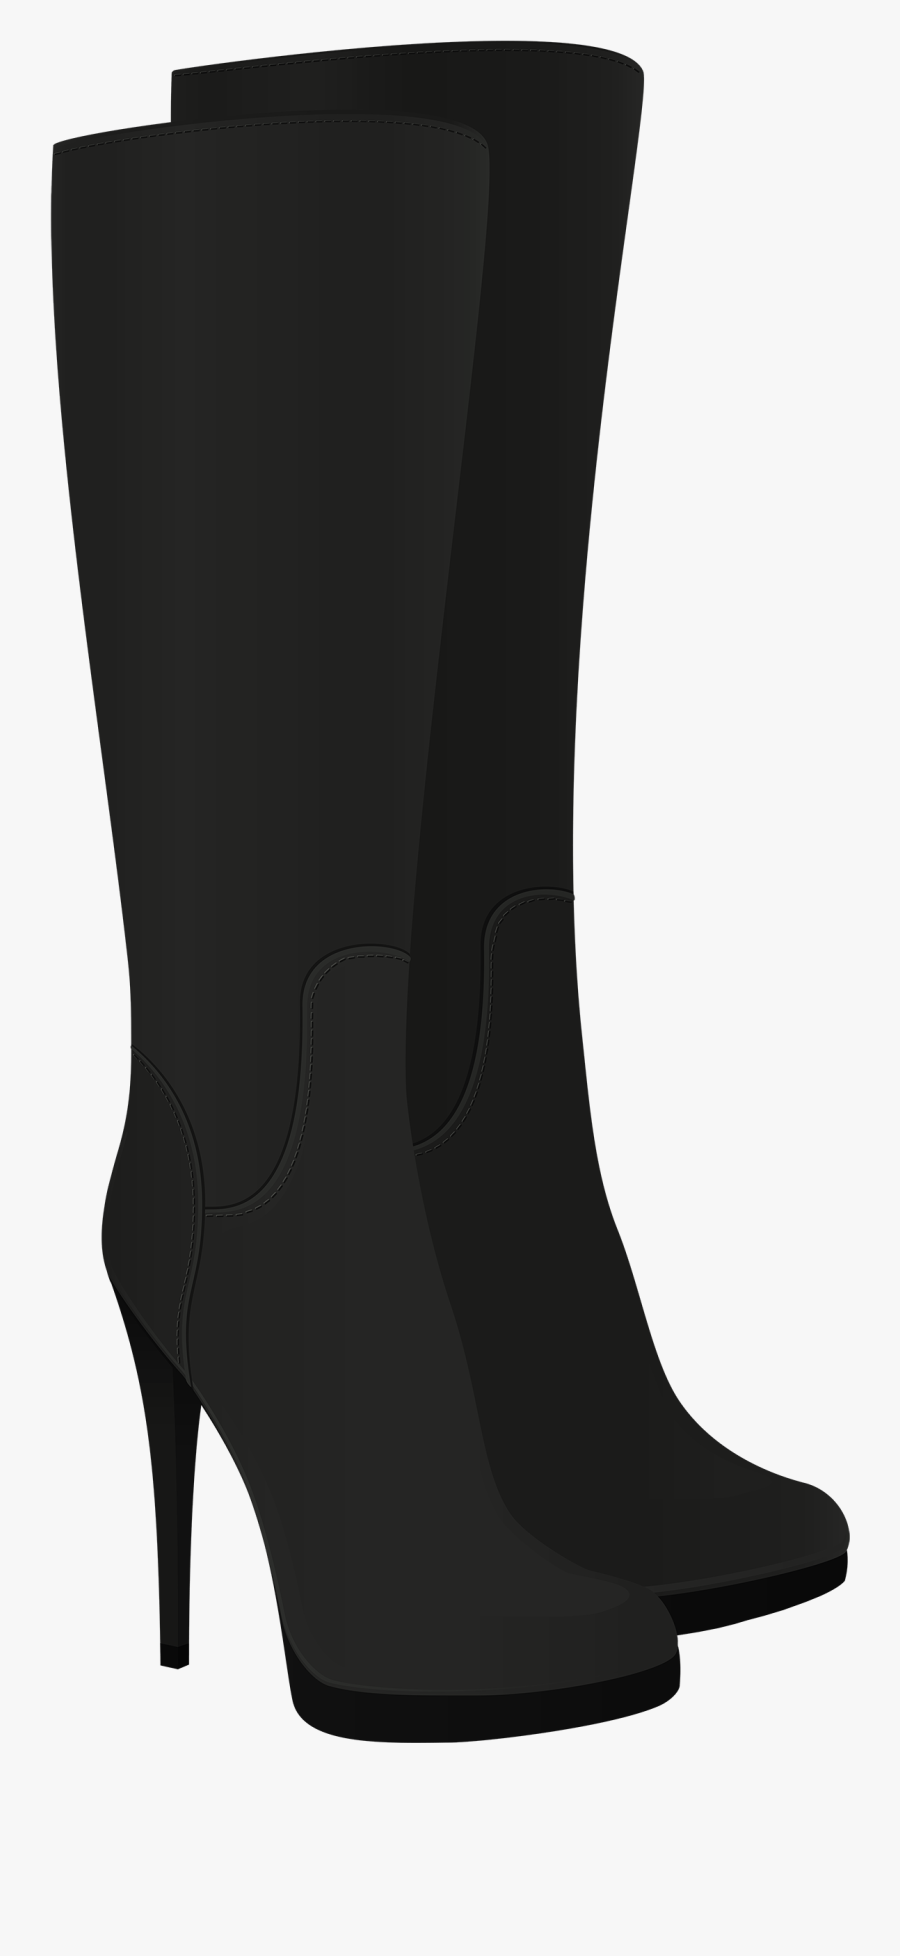 Black Western Boots Clipart - Long Black Boots Transparent, Transparent Clipart